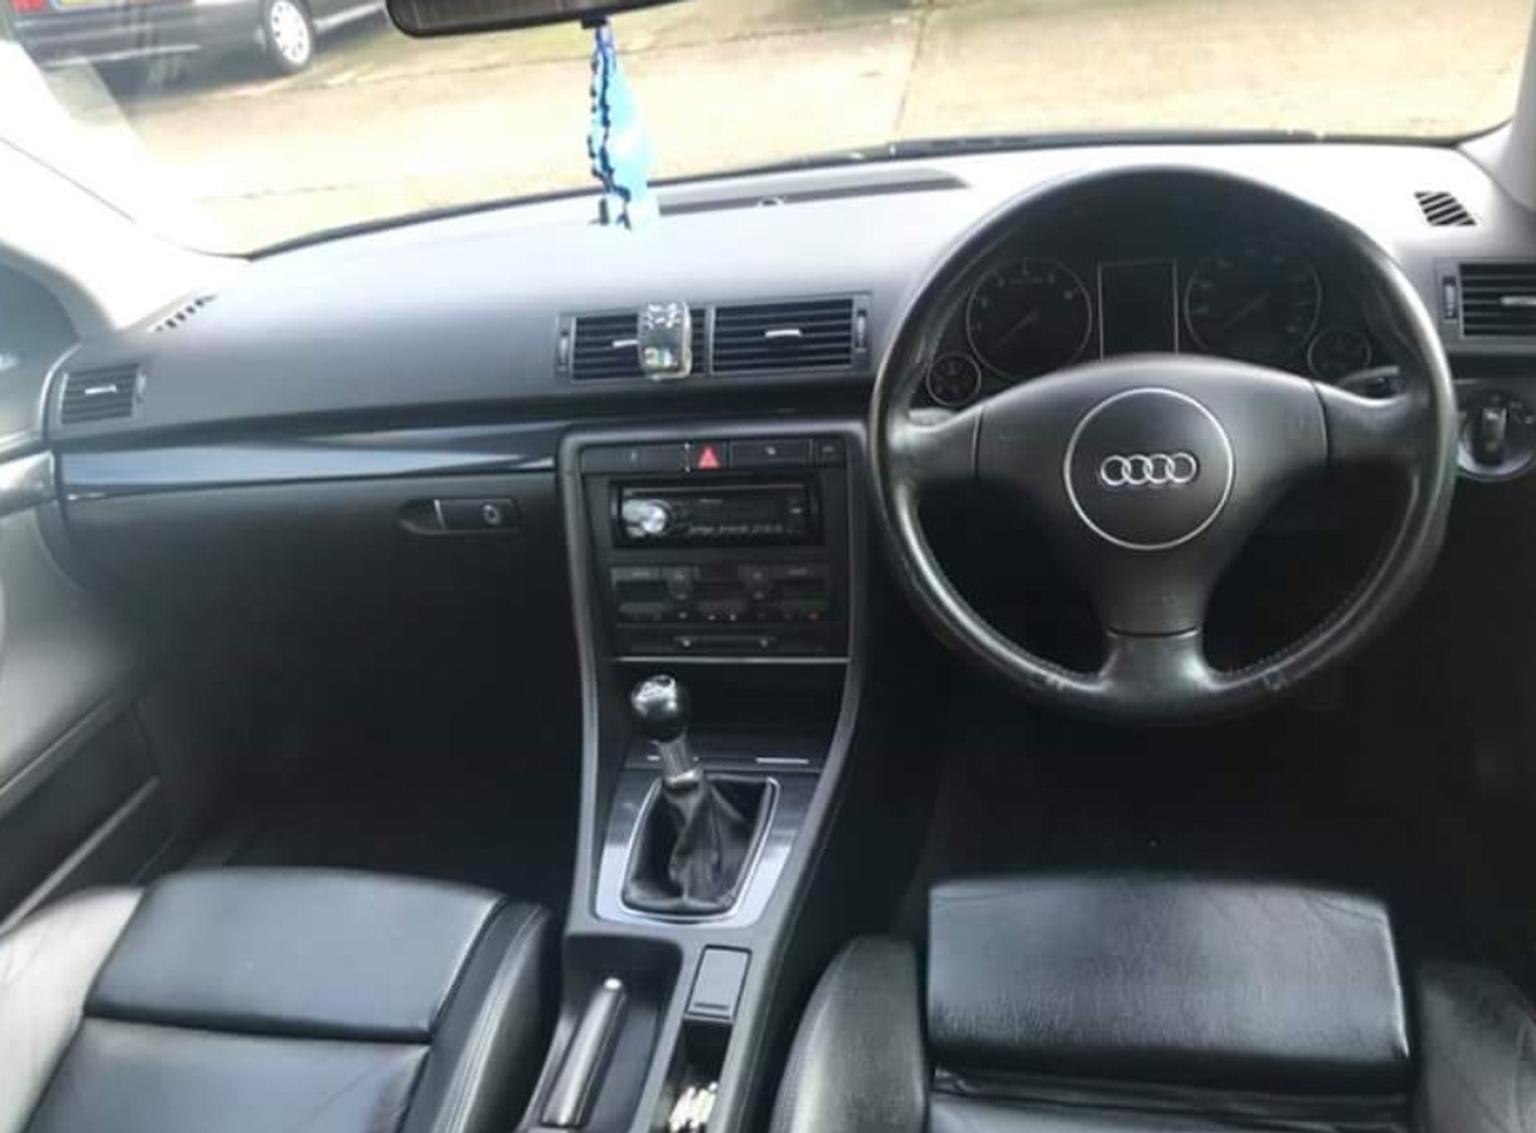 Audi A4 In E12 London Borough Of Newham Fur 1 650 00